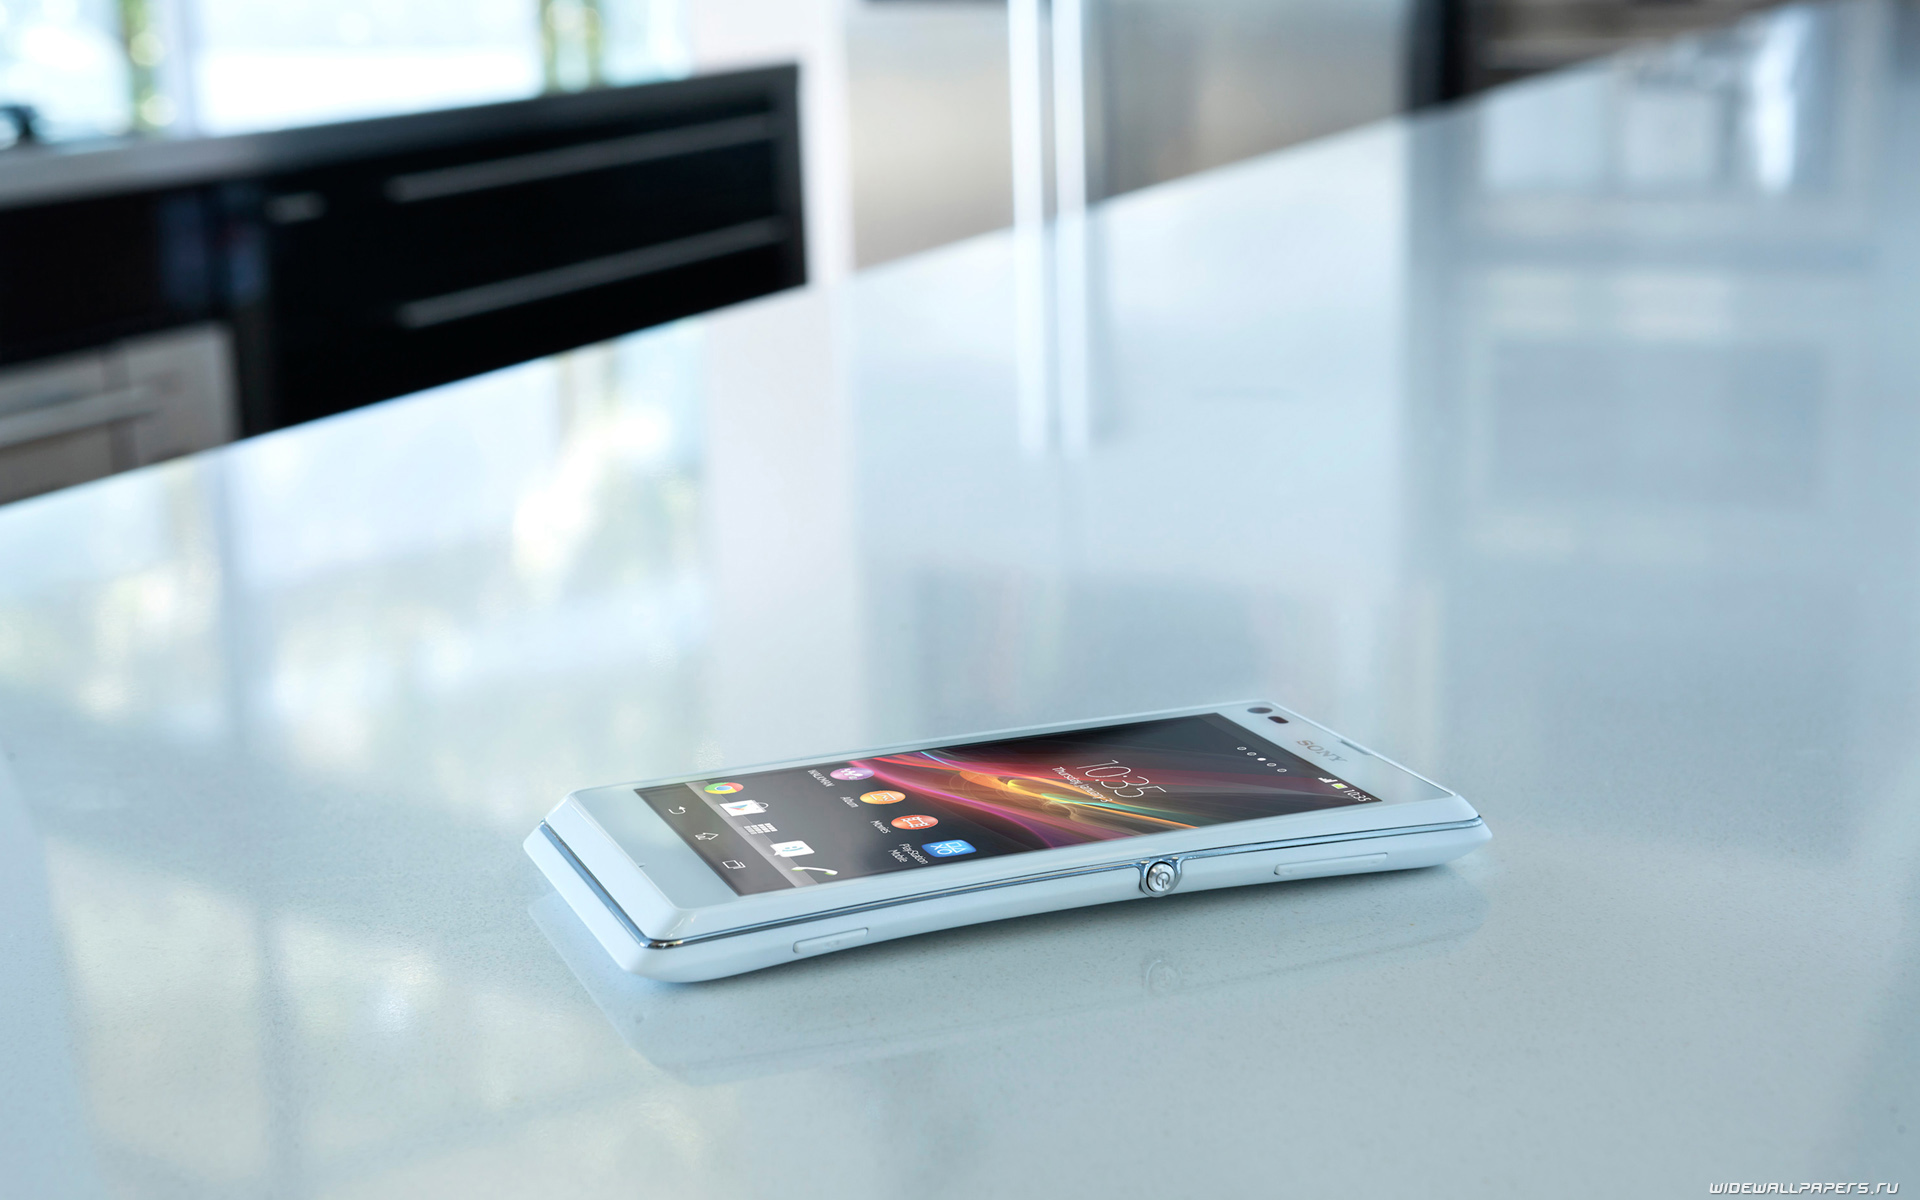 Положите телефон на стол. Sony Xperia c2105. Смартфон на столе. Смартфон лежит на столе. Сотовый стол.